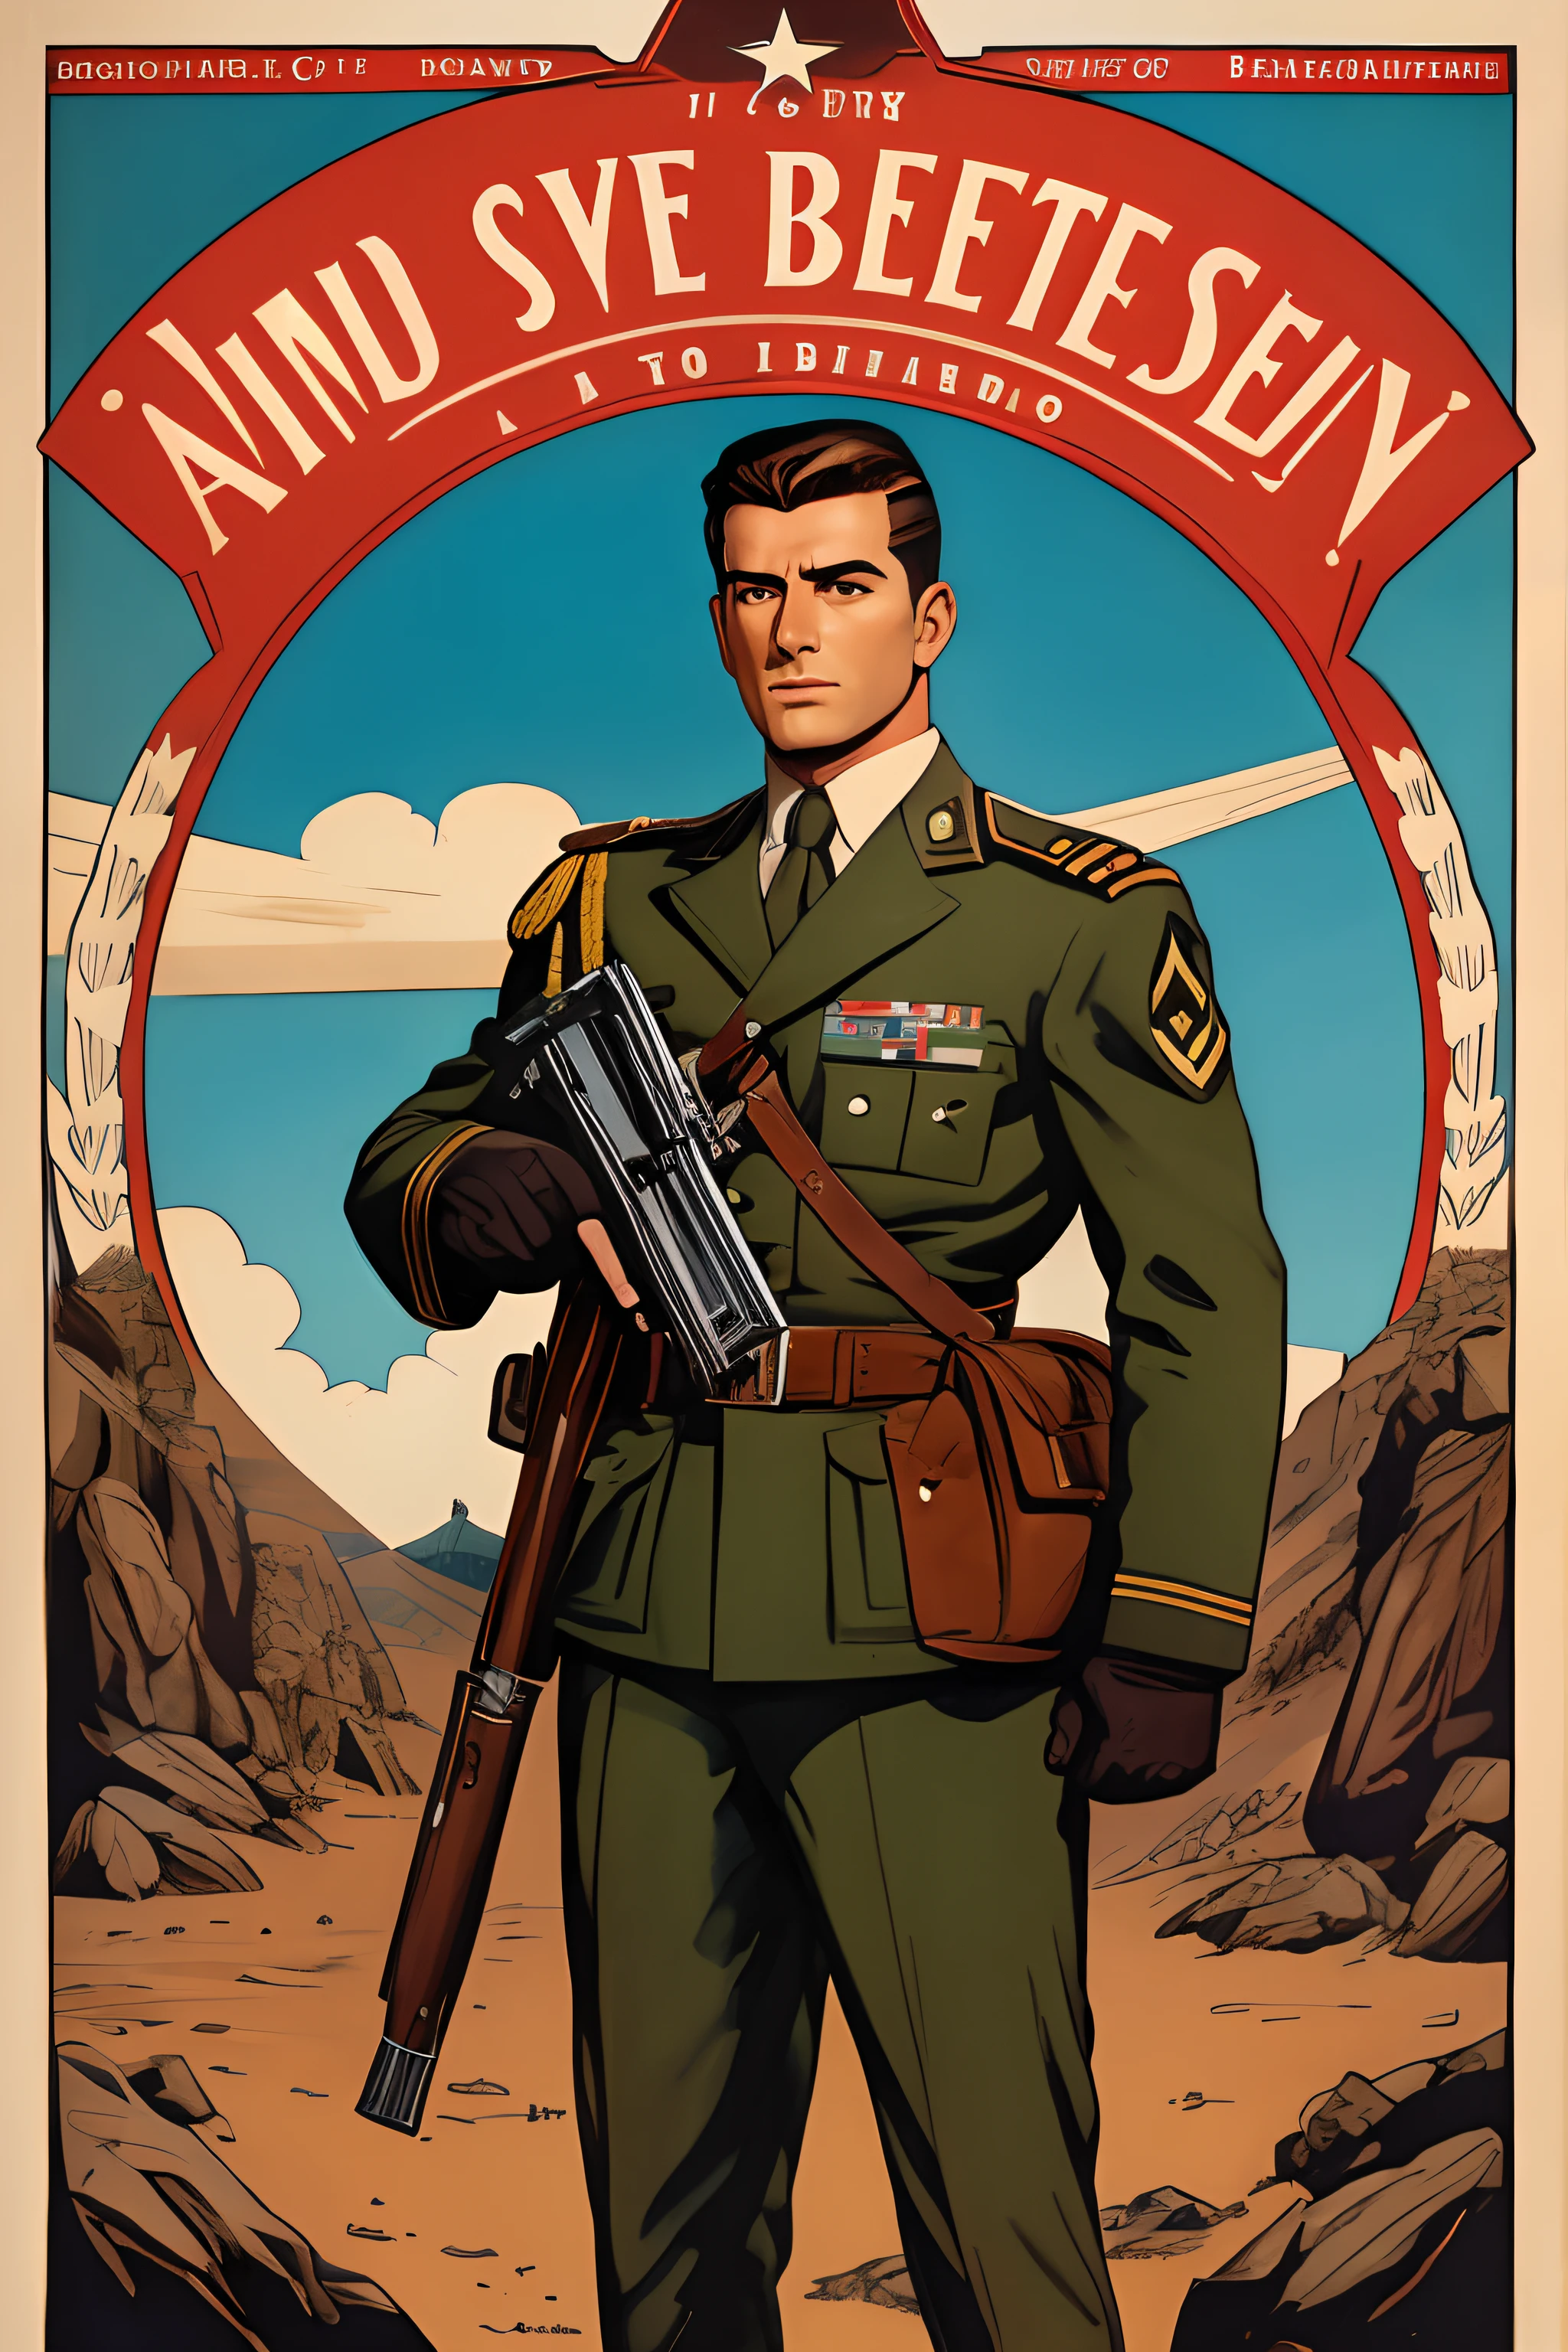 约翰·布西马的艺术灵感, 第二次世界大战海报, 我们看到一名学员向上级敬礼, 完美的军装, 齐肩短发, 红色头发颜色, 浅绿色的眼睛, 小乳房, 修长的身材, 在战场上威风凛凛, 炮火, 展现严肃和信念的场景